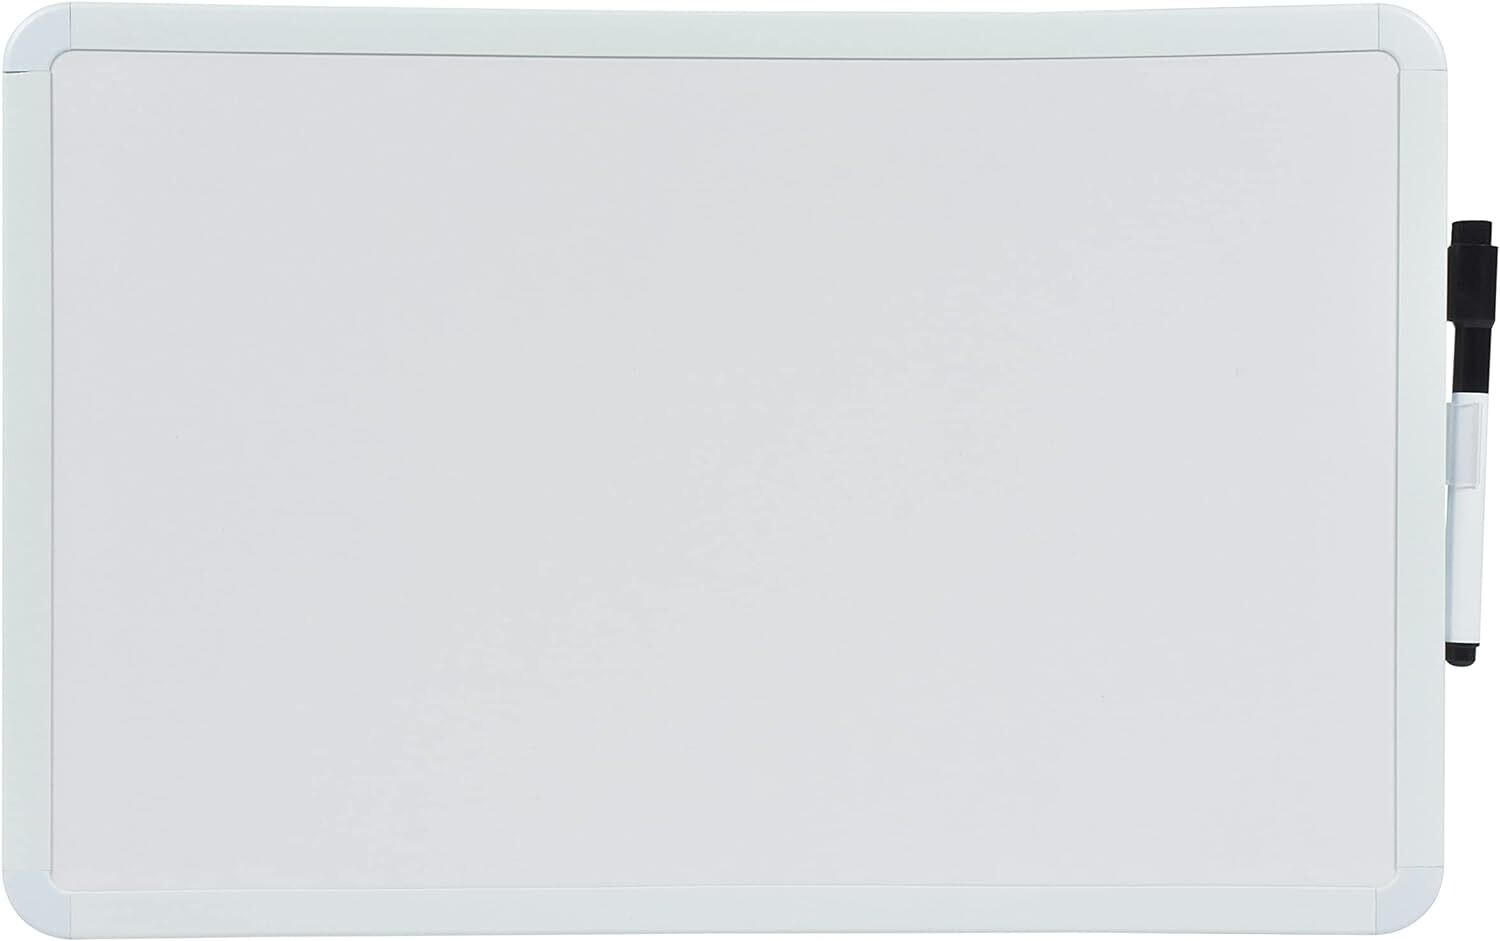 Smart Dry Erase Board, 30x20cm, White